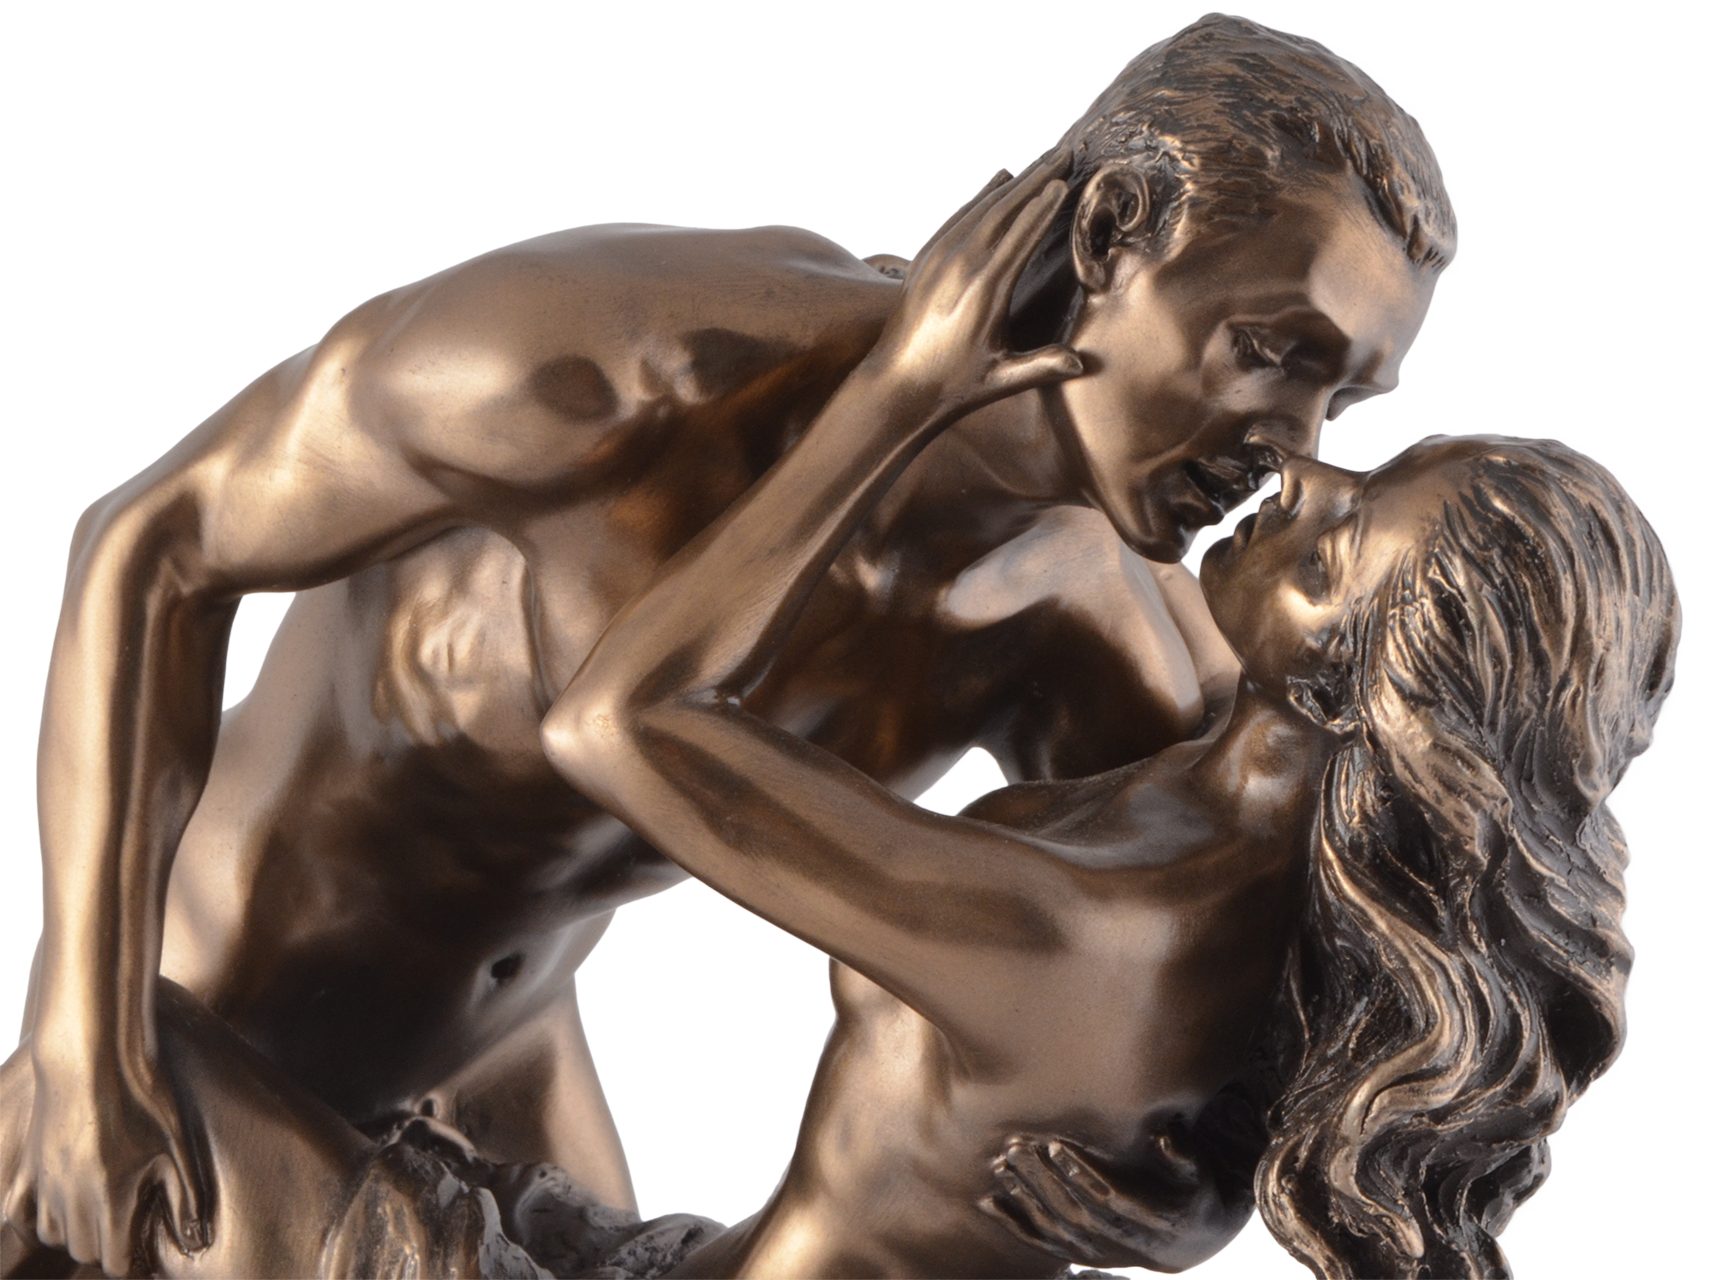 Liebenden "Love ca. Vogler Dekofigur Die Gmbh - Spring" direct bronziert, bronziert by von 21x10x22cm Hand Veronese, LxBxH in